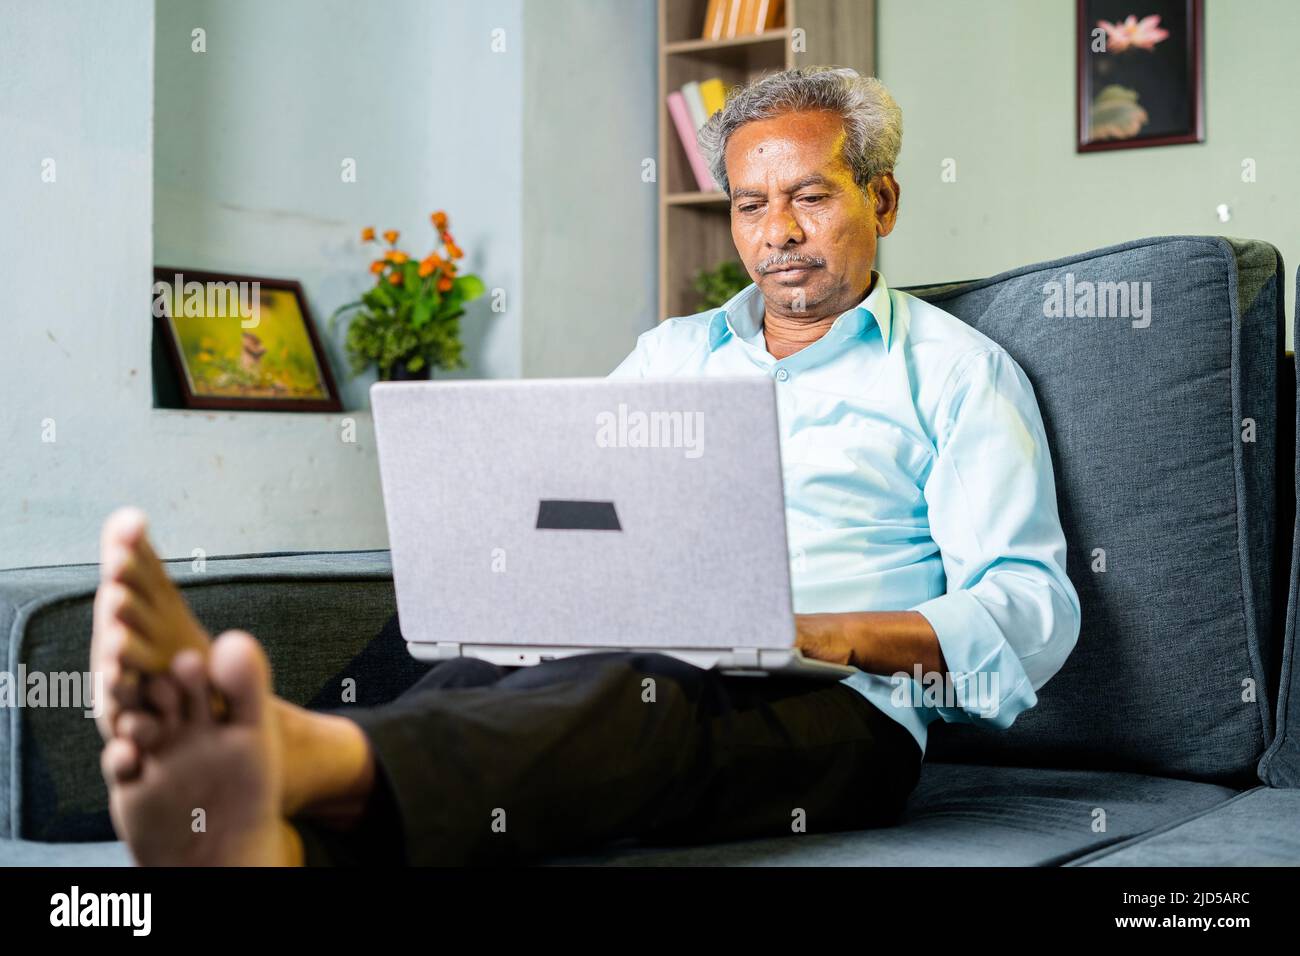 Senior alter Geschäftsmann beschäftigt mit Laptop zu Hause auf dem Sofa - Konzept der Cyberspace, Konzentration und Altersvorsorge Stockfoto